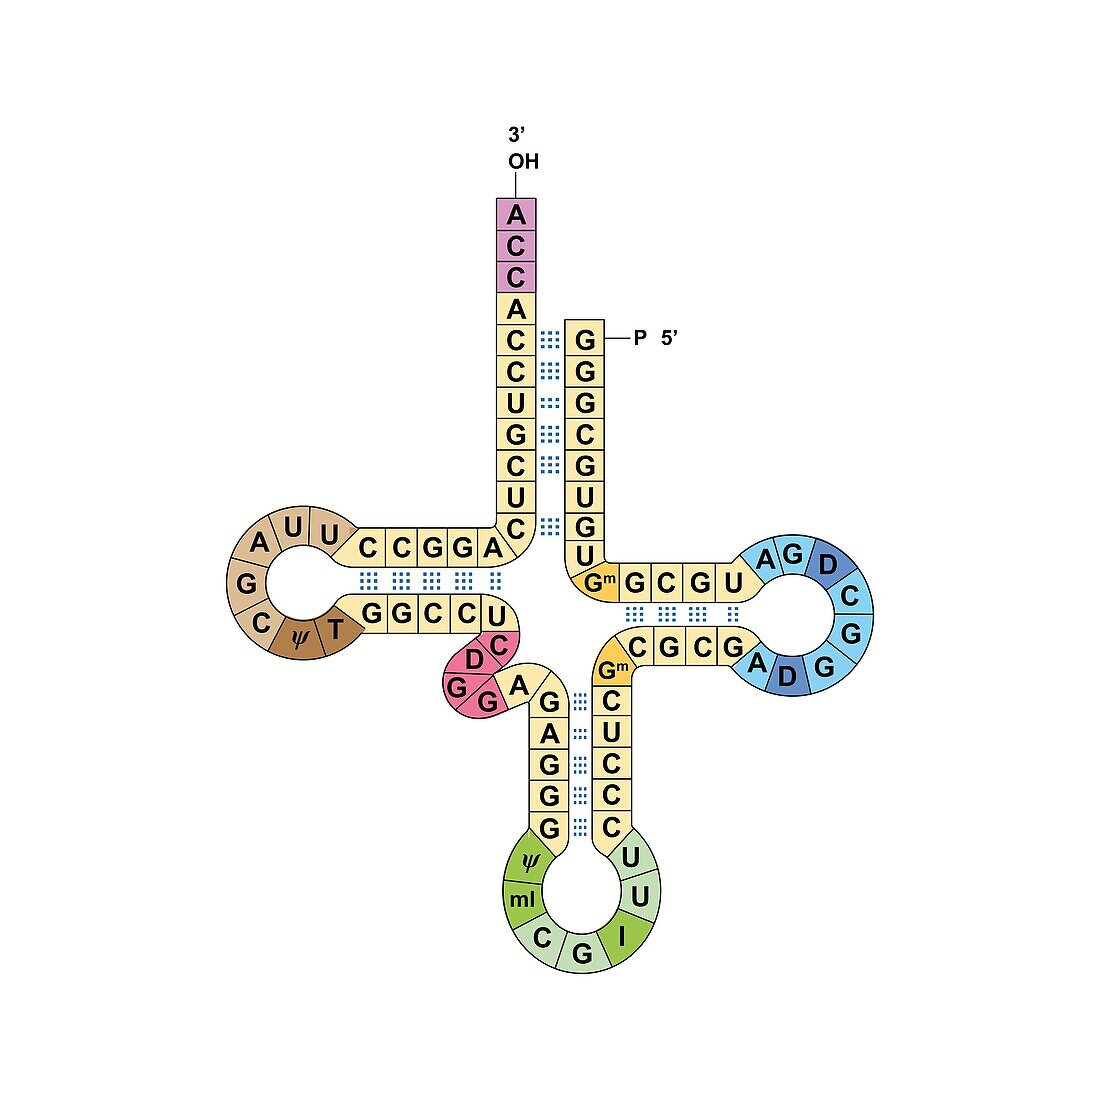 Transfer RNA, illustration